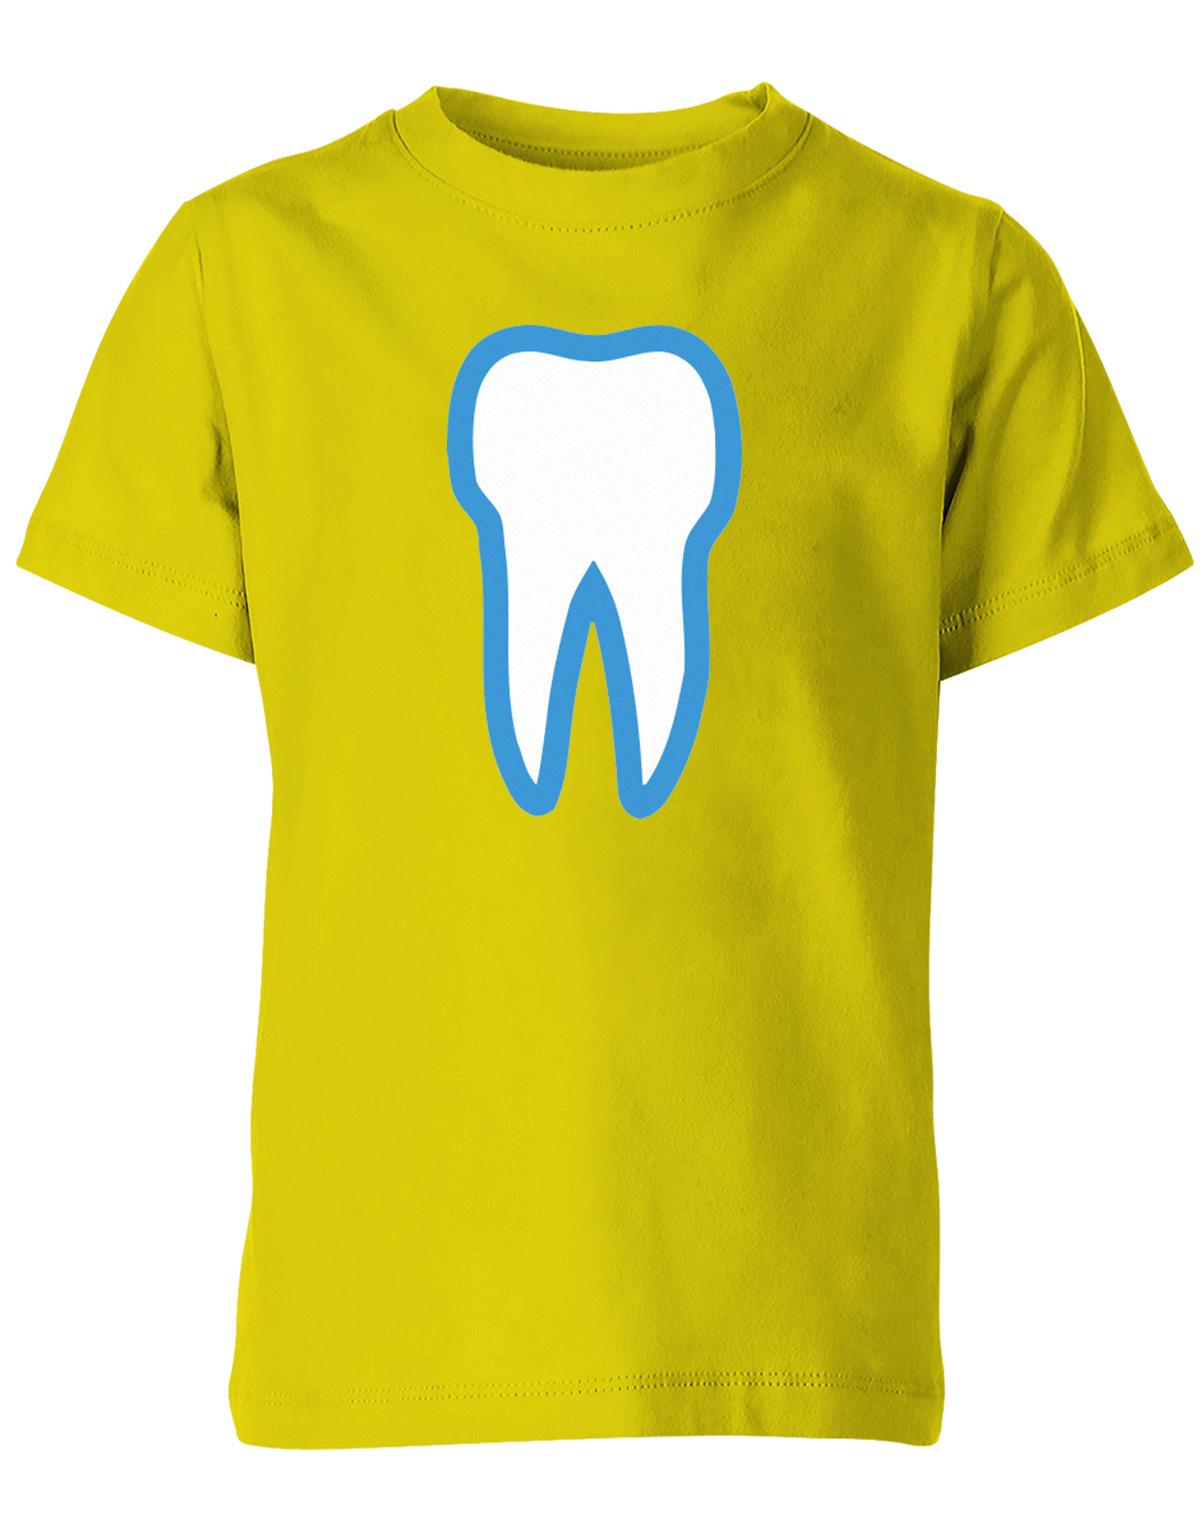 Zahn-kost-m-kinder-shirt-gelb